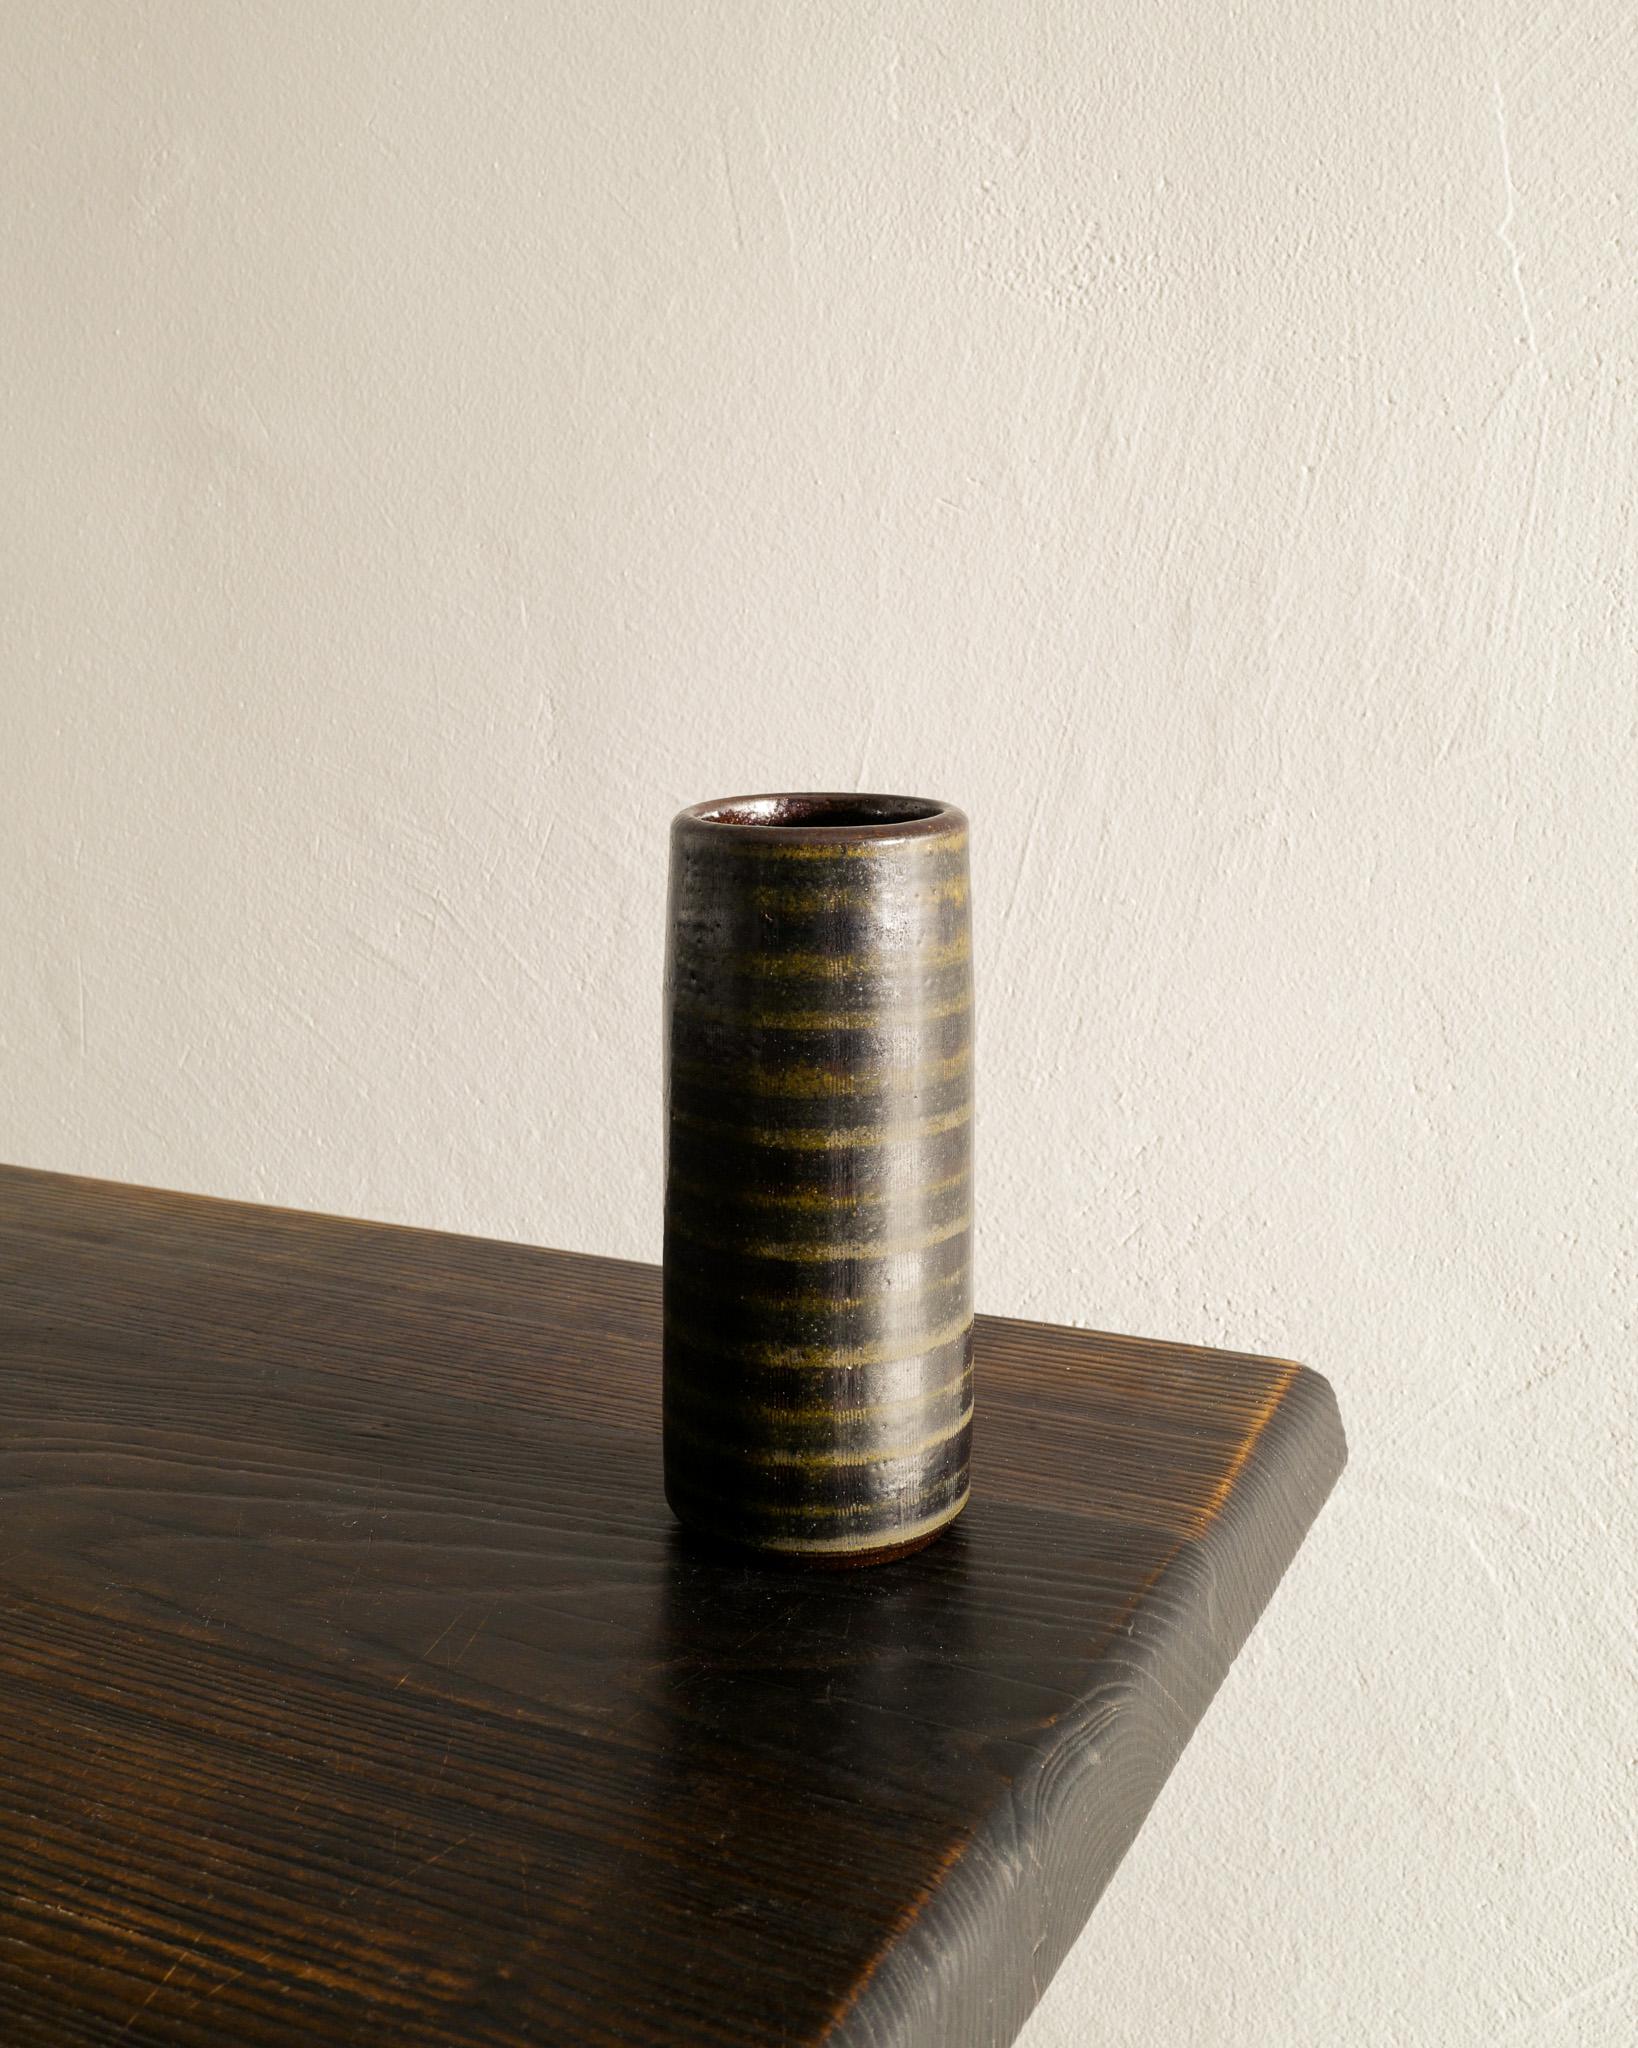 Rare vase cylindrique en céramique du milieu du siècle en émail vert foncé, brun et jaune par Arthur Andersson pour Wallåkra produit dans les années 1940. En bon état d'origine. Signé.

Dimensions : H : 17 cm / 6.7